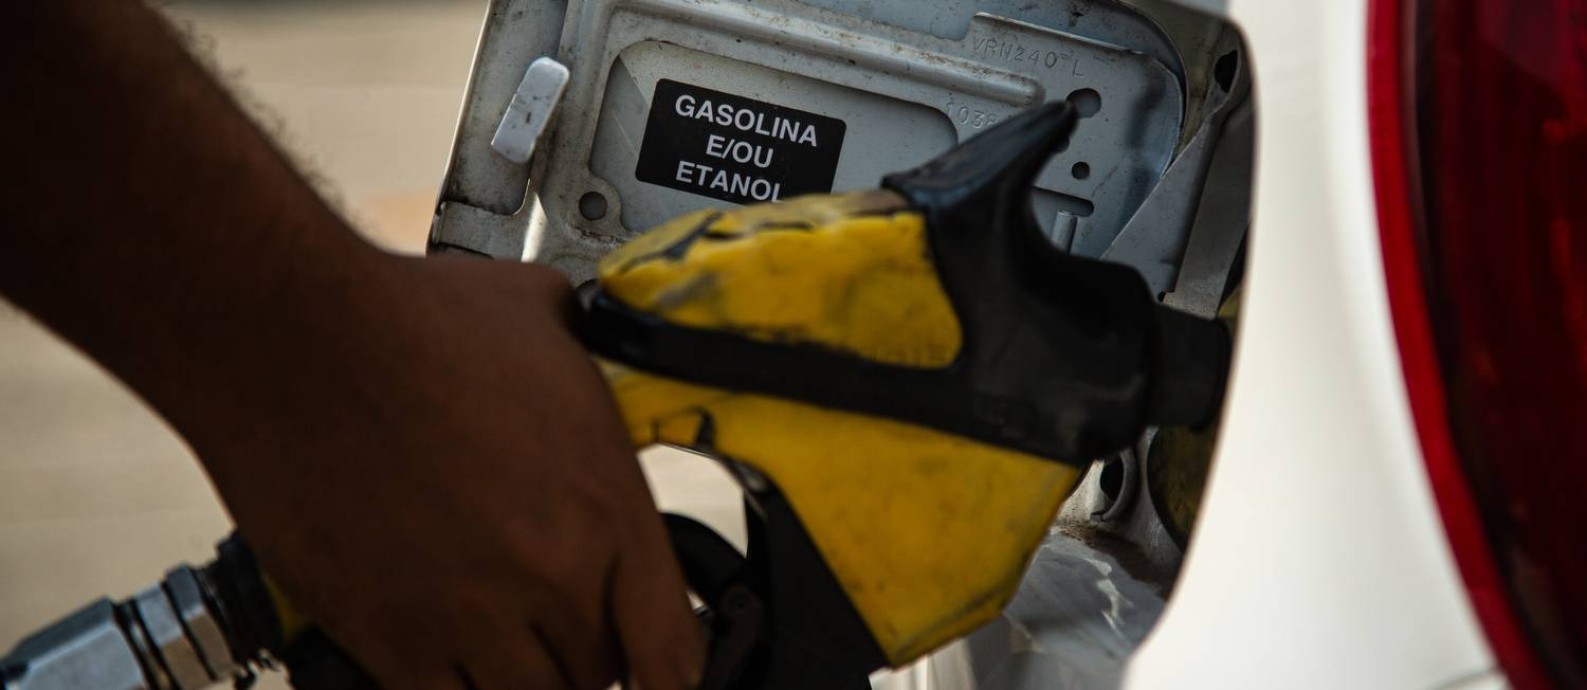 Carro é abastecido em posto de combustíveis no Rio Foto: Hermes de Paula / Agência O Globo